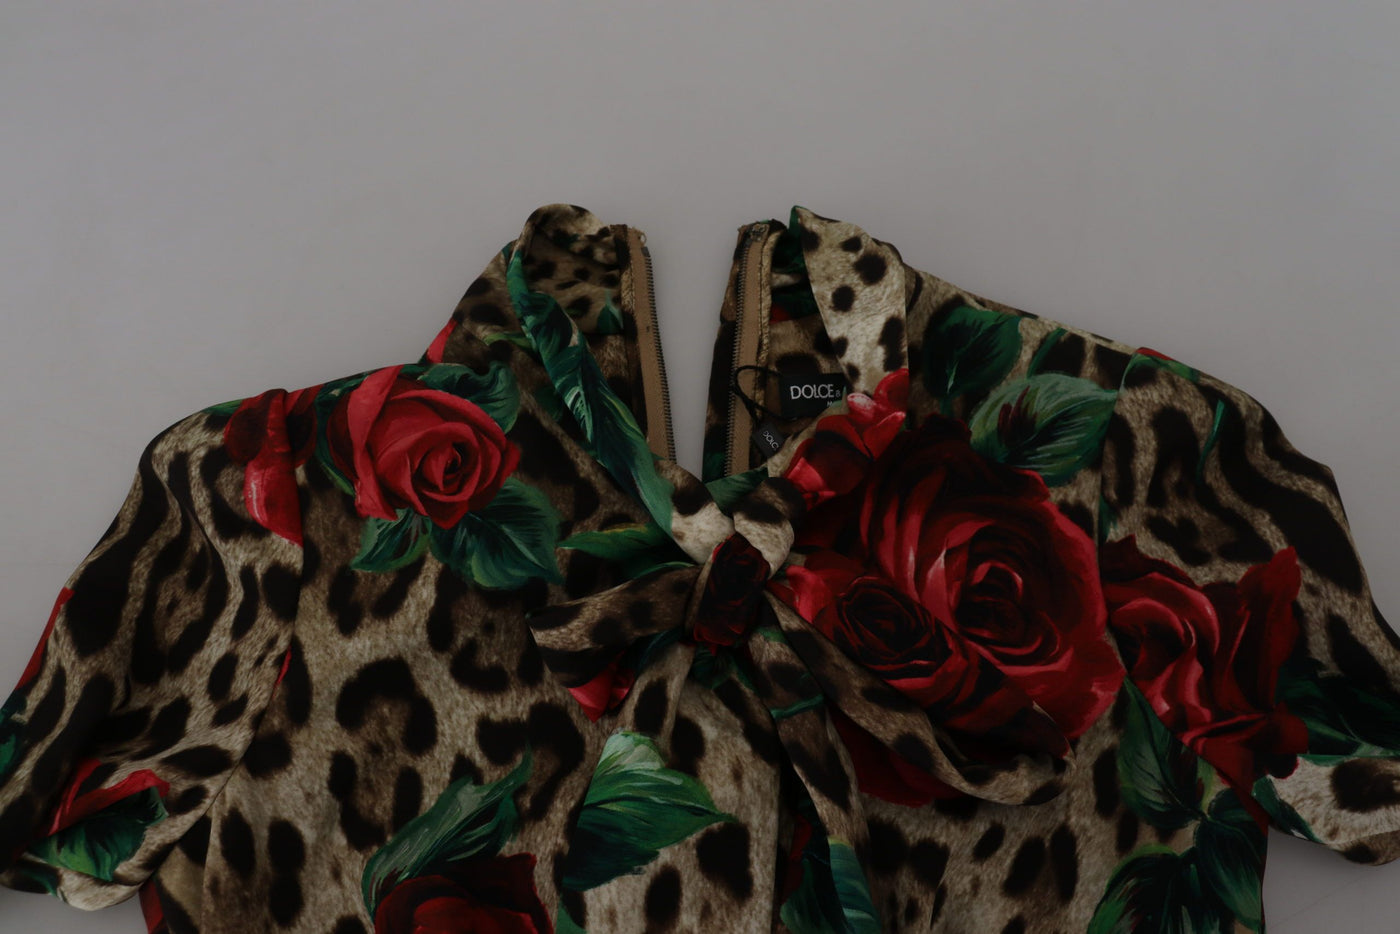 Brown Leopard Roses Silk Stretch Sheath Dress